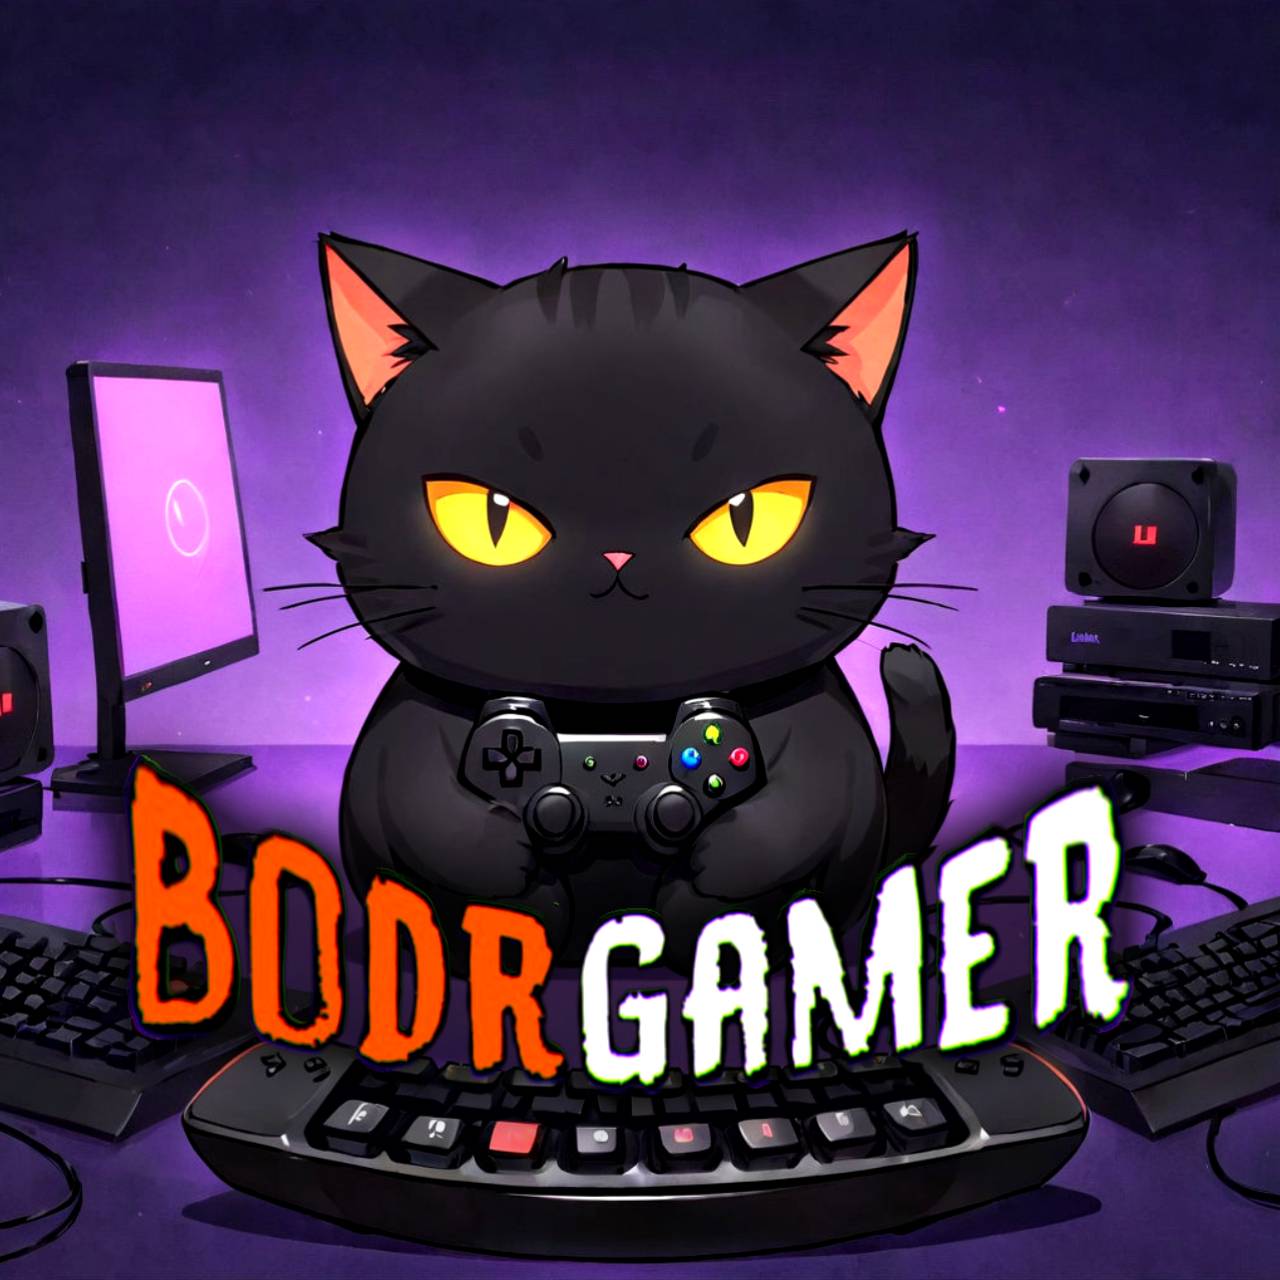 Иконка канала BodrGamer [игры | ностальгия | позитив]